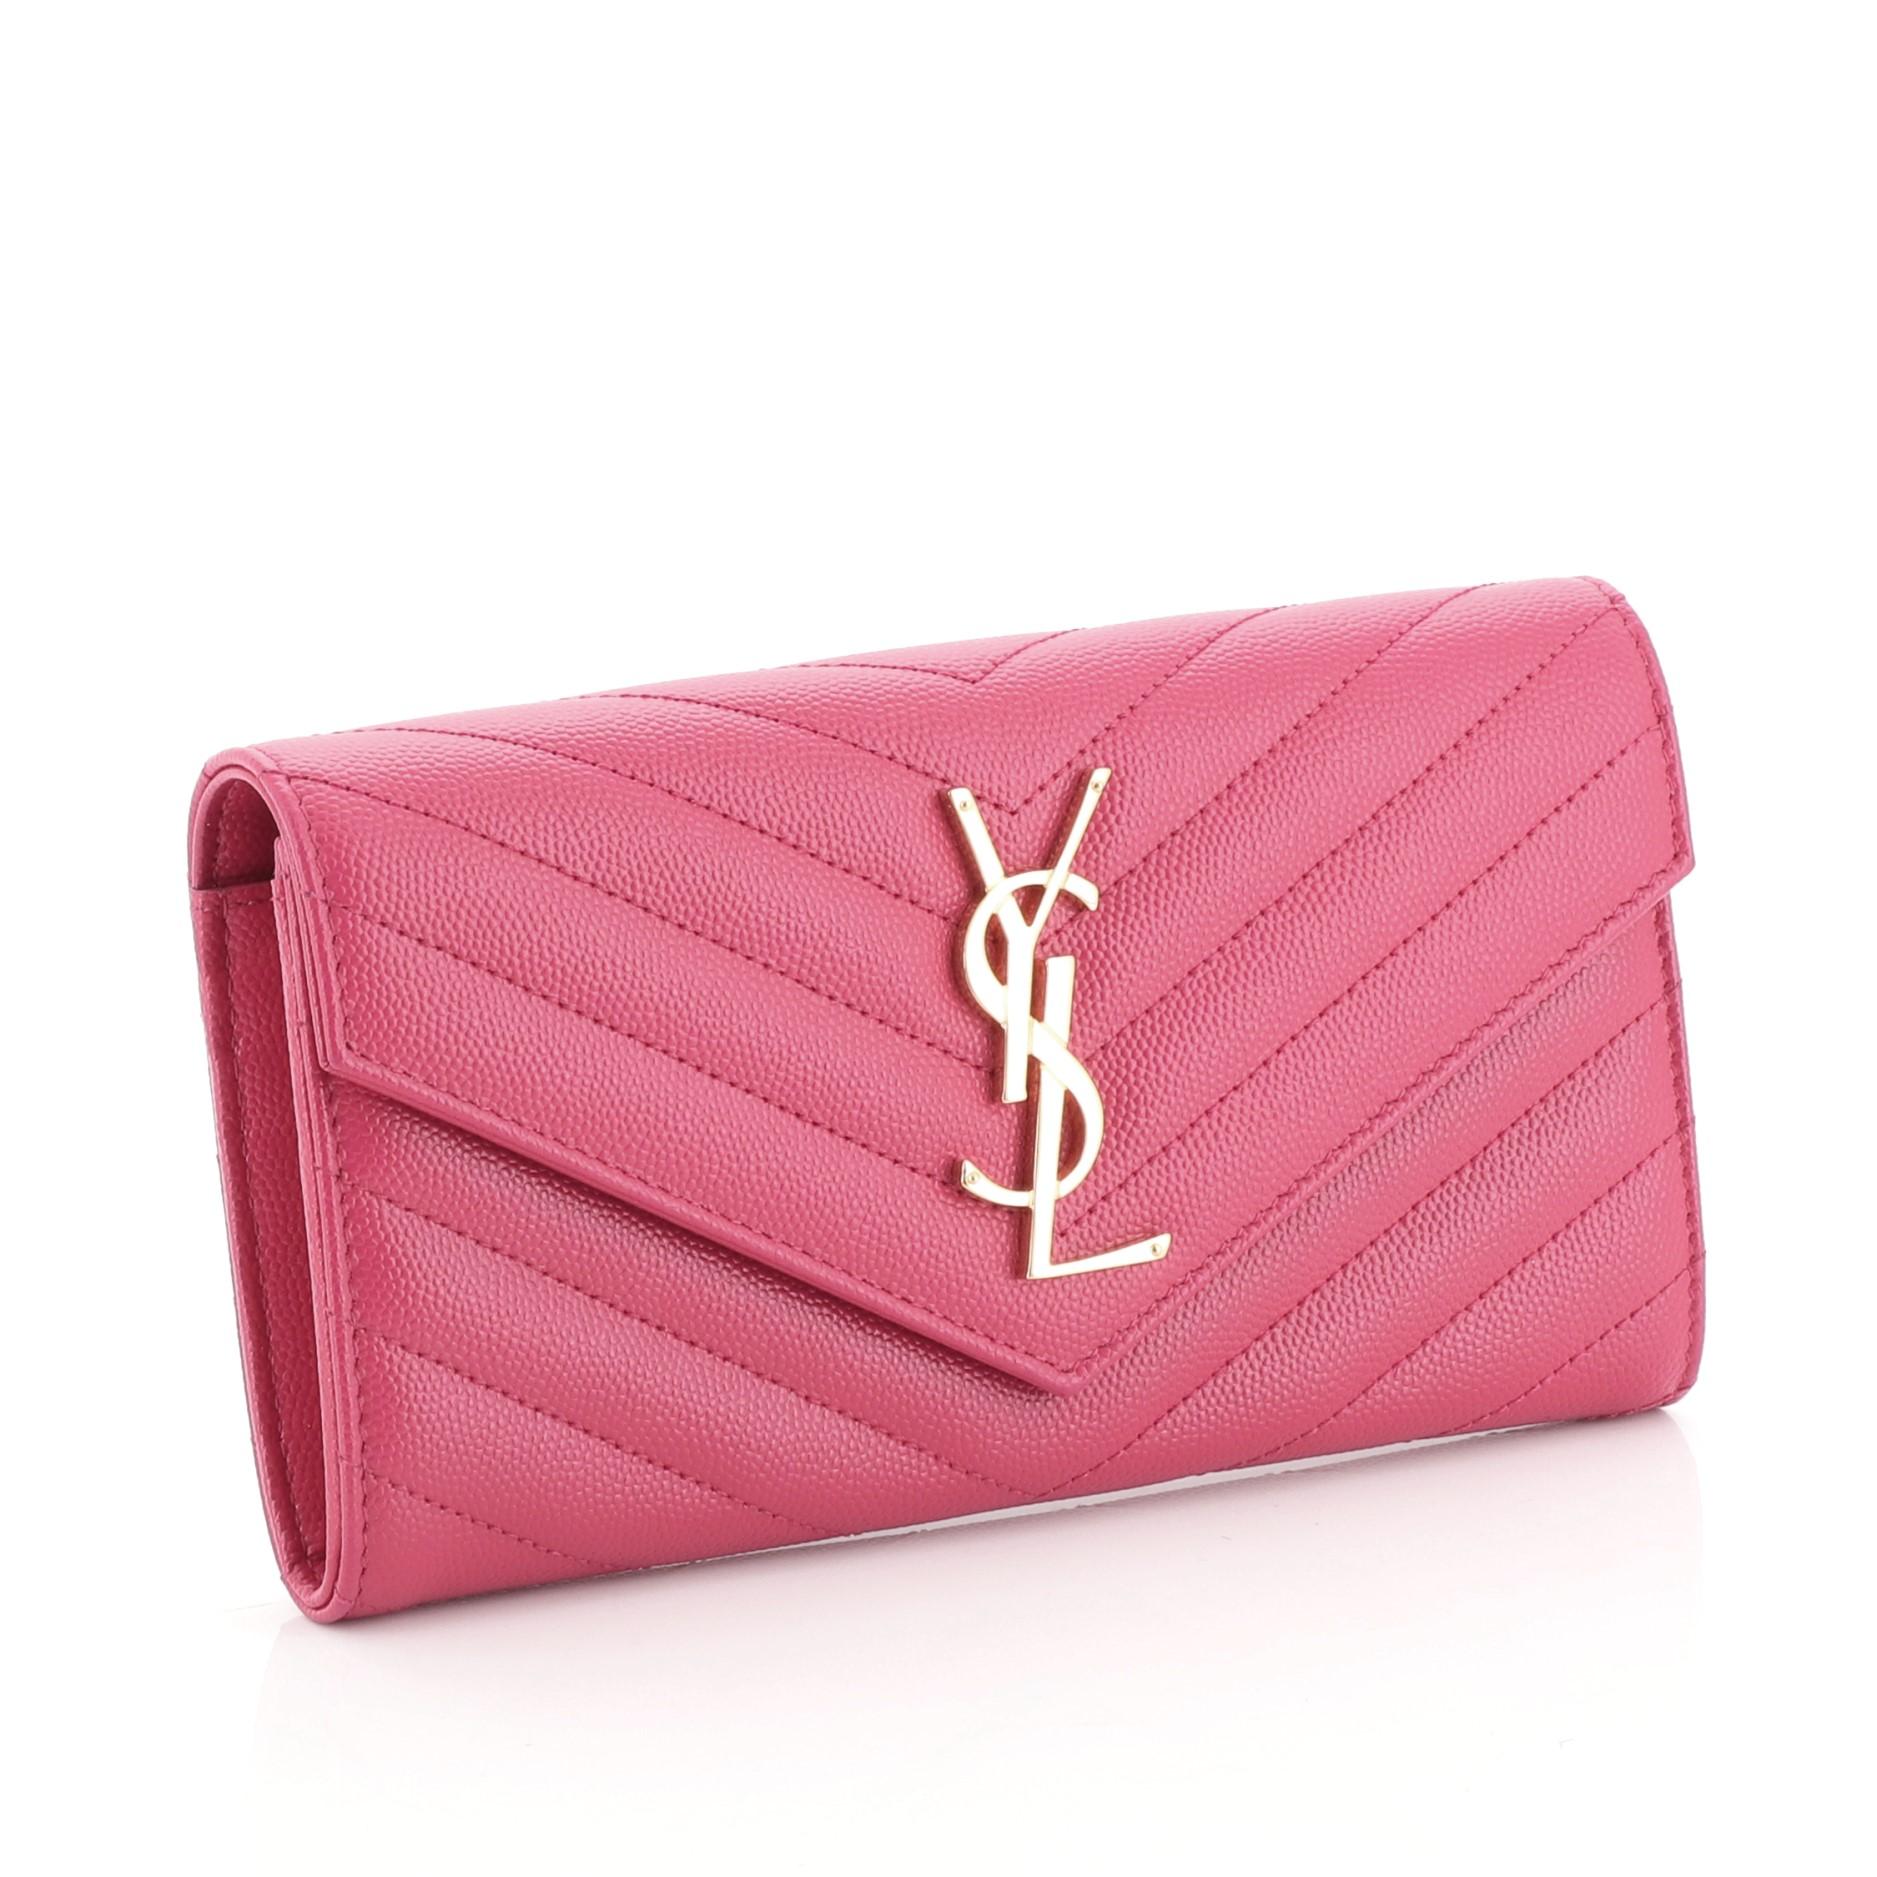 Pink Saint Laurent Classic Monogram Flap Wallet